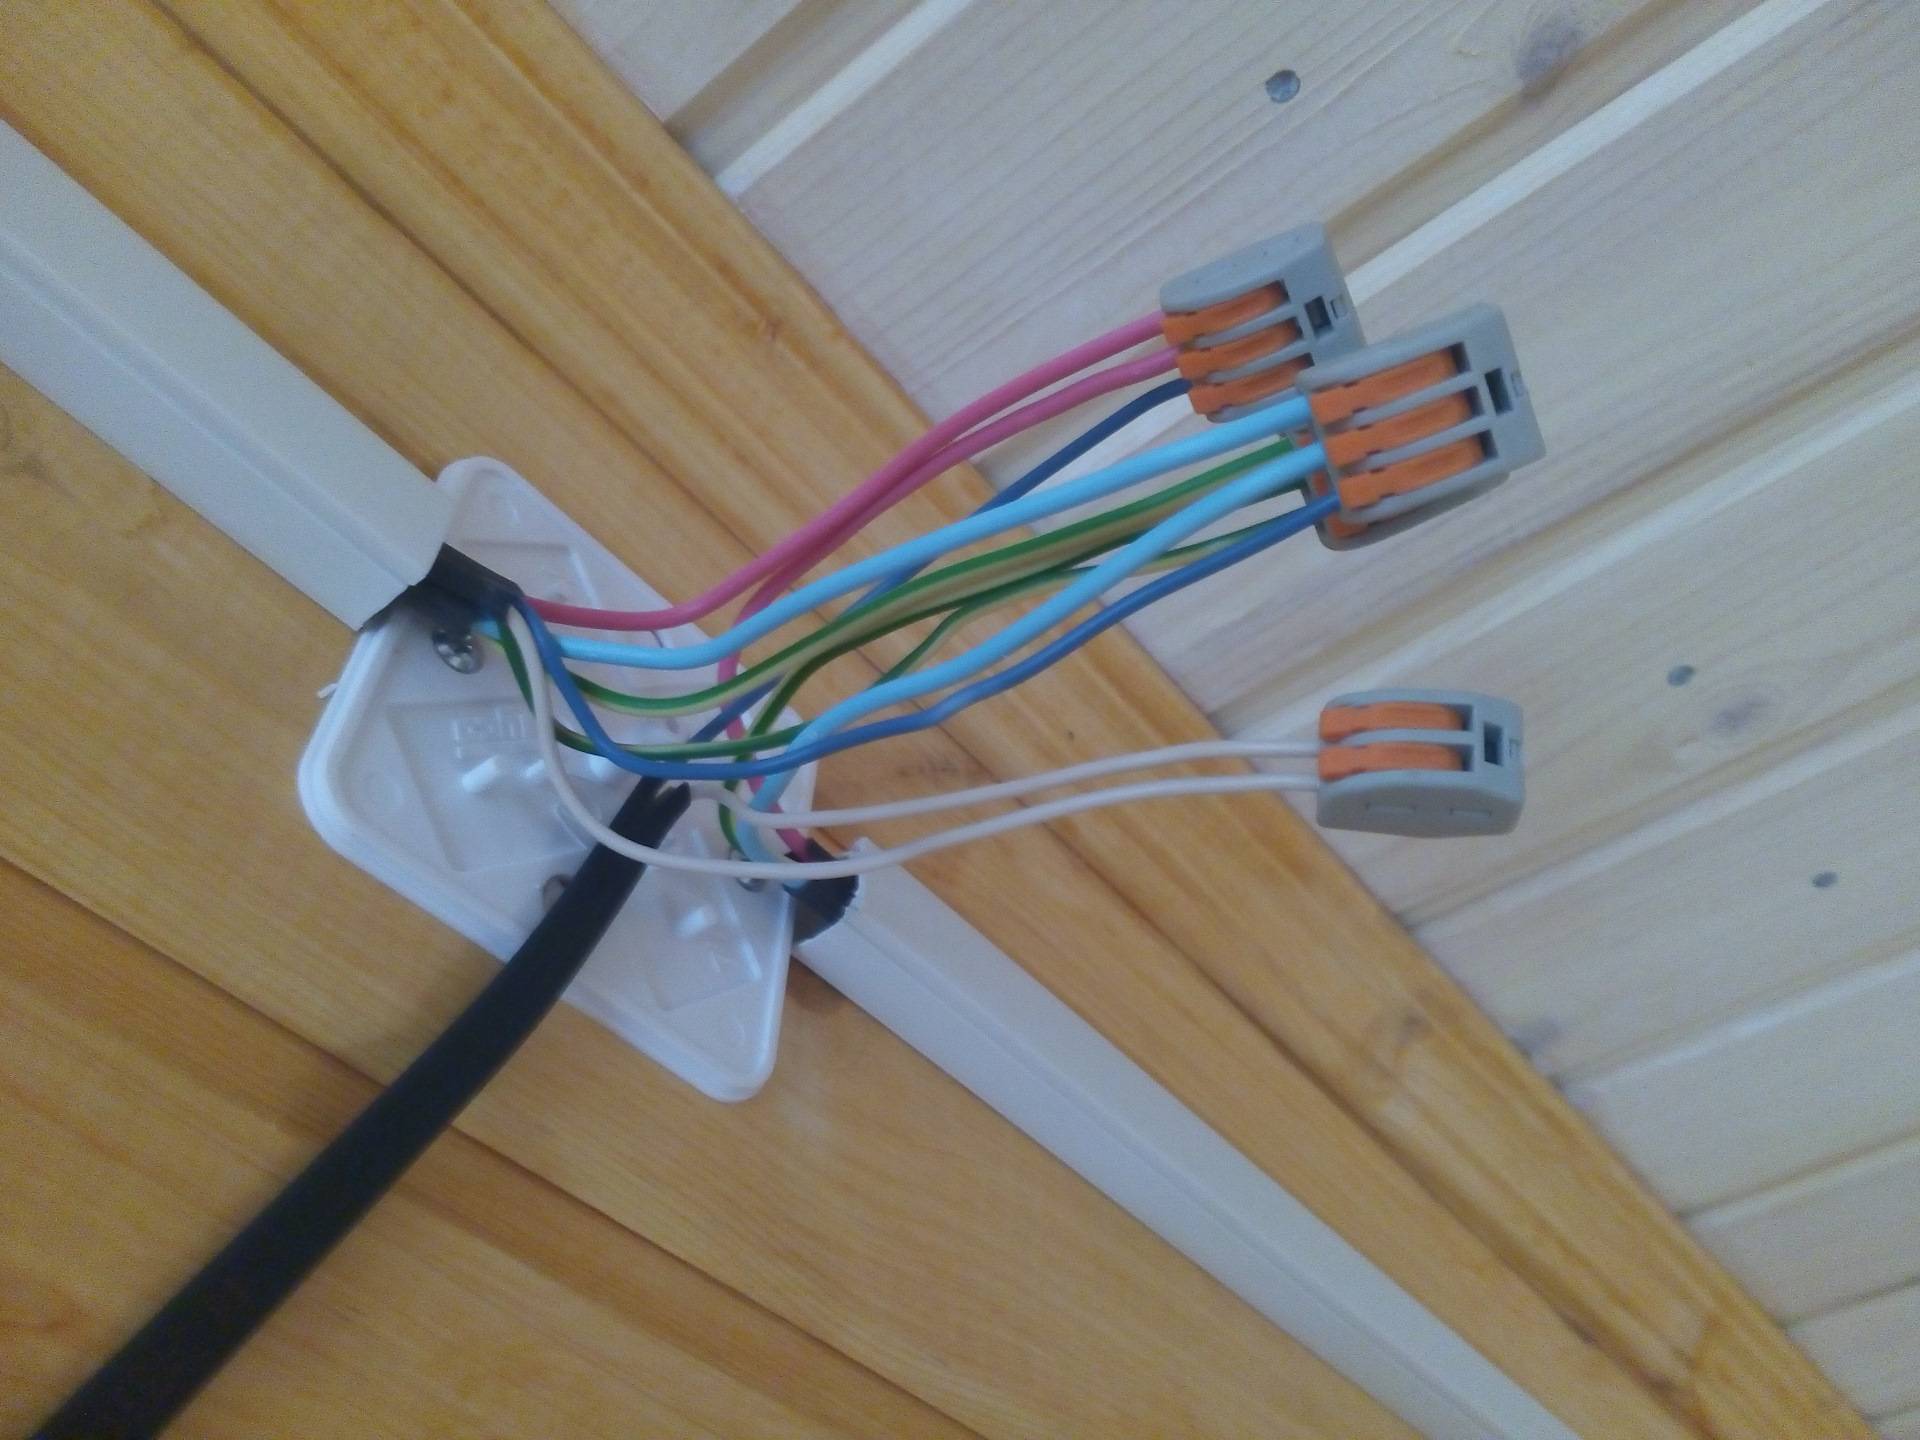 Сечение кабеля.как его правильно выбрать.электрощиты. сборка и проектирование